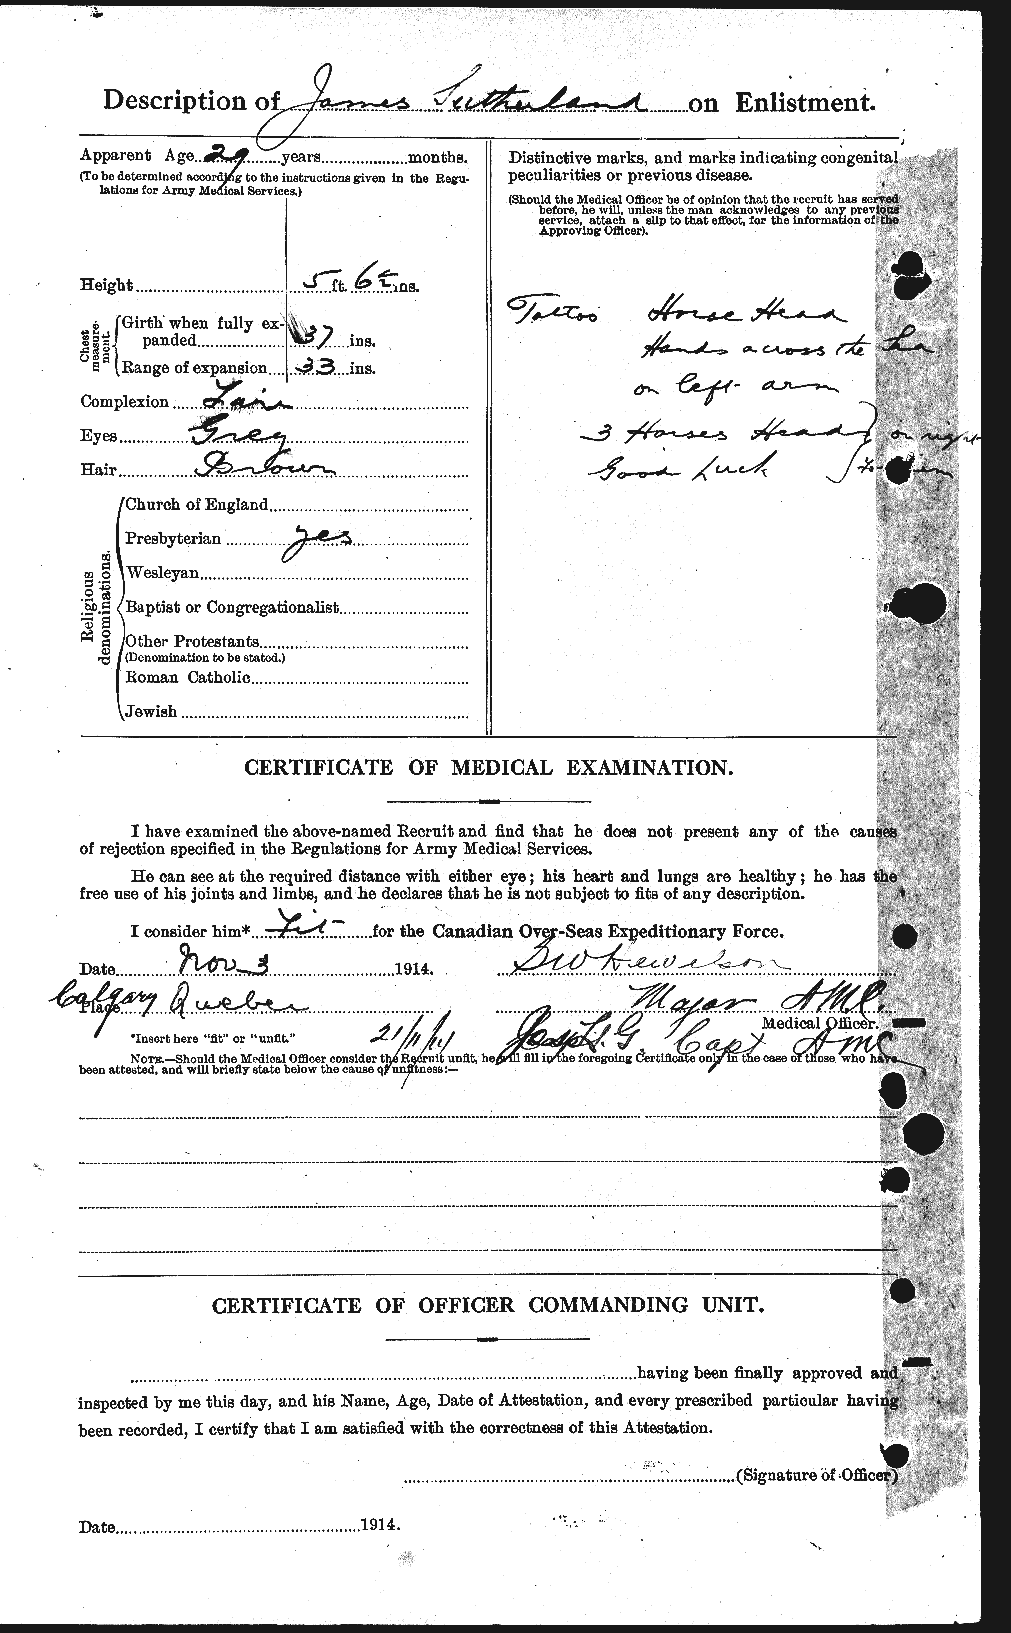 Dossiers du Personnel de la Première Guerre mondiale - CEC 124742b